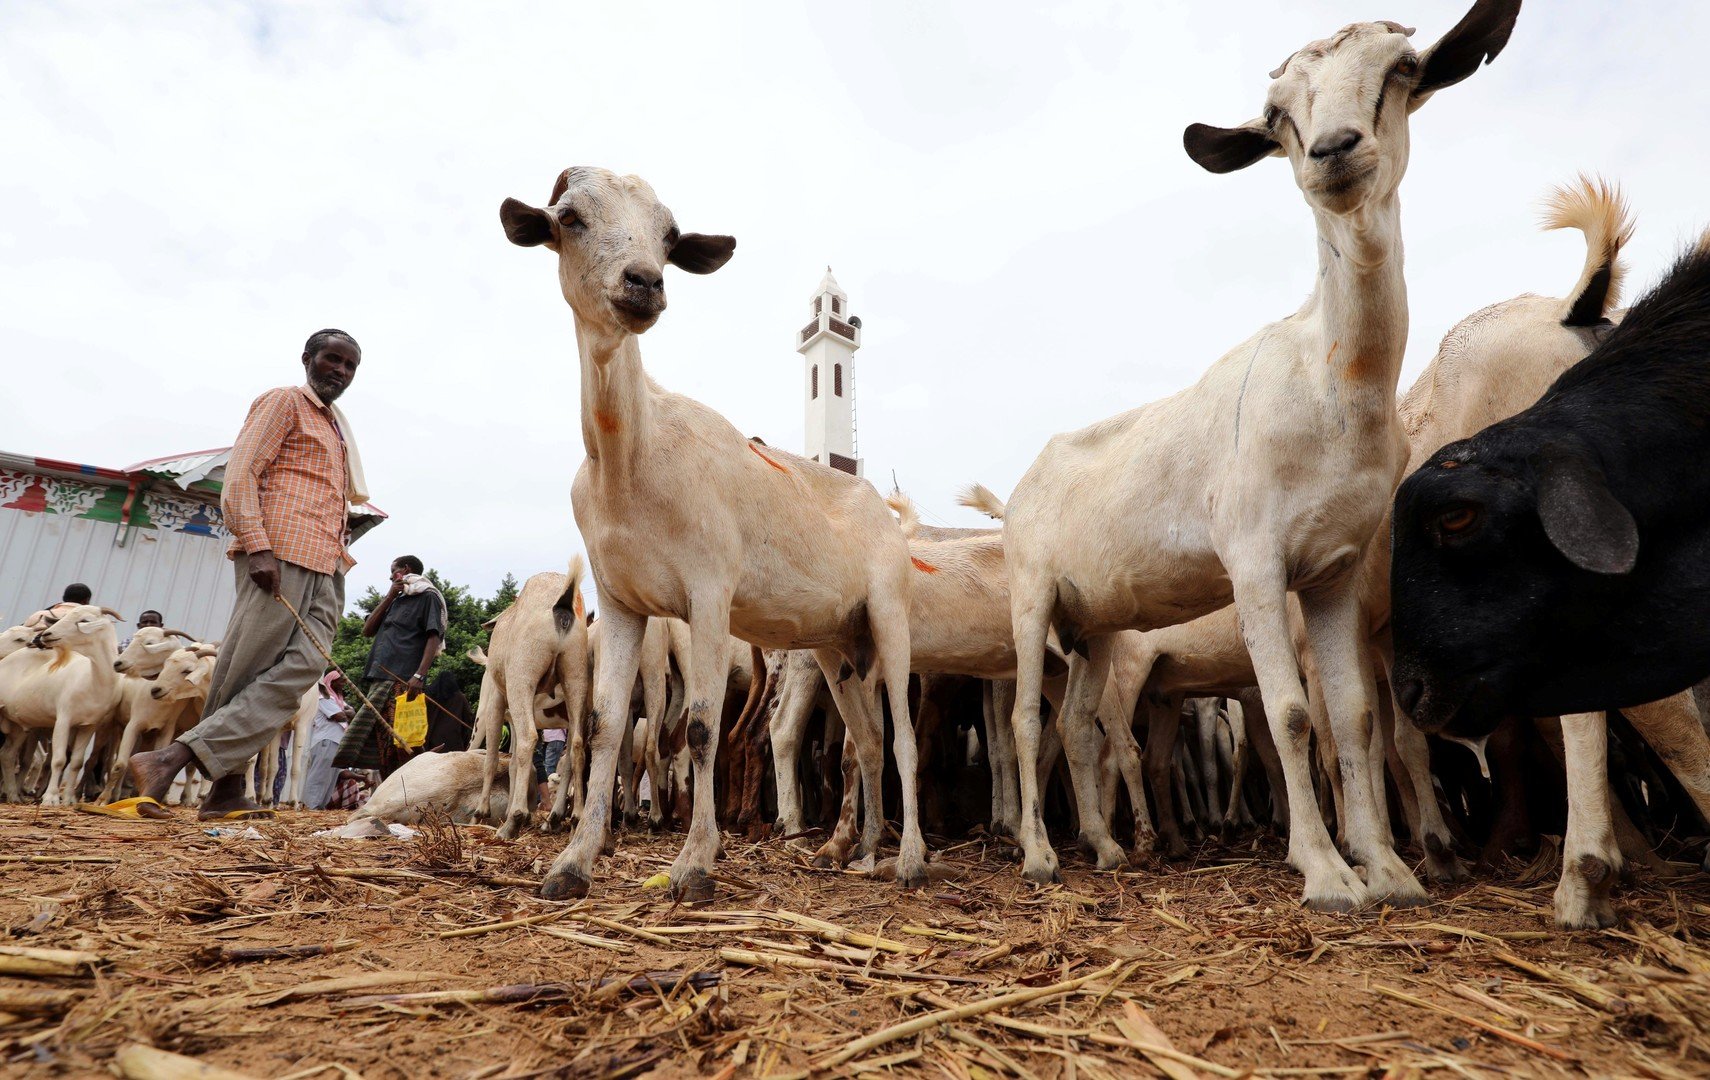 نفوق ماشية سودانية  بملايين الدولارات في السعودية (صورة)